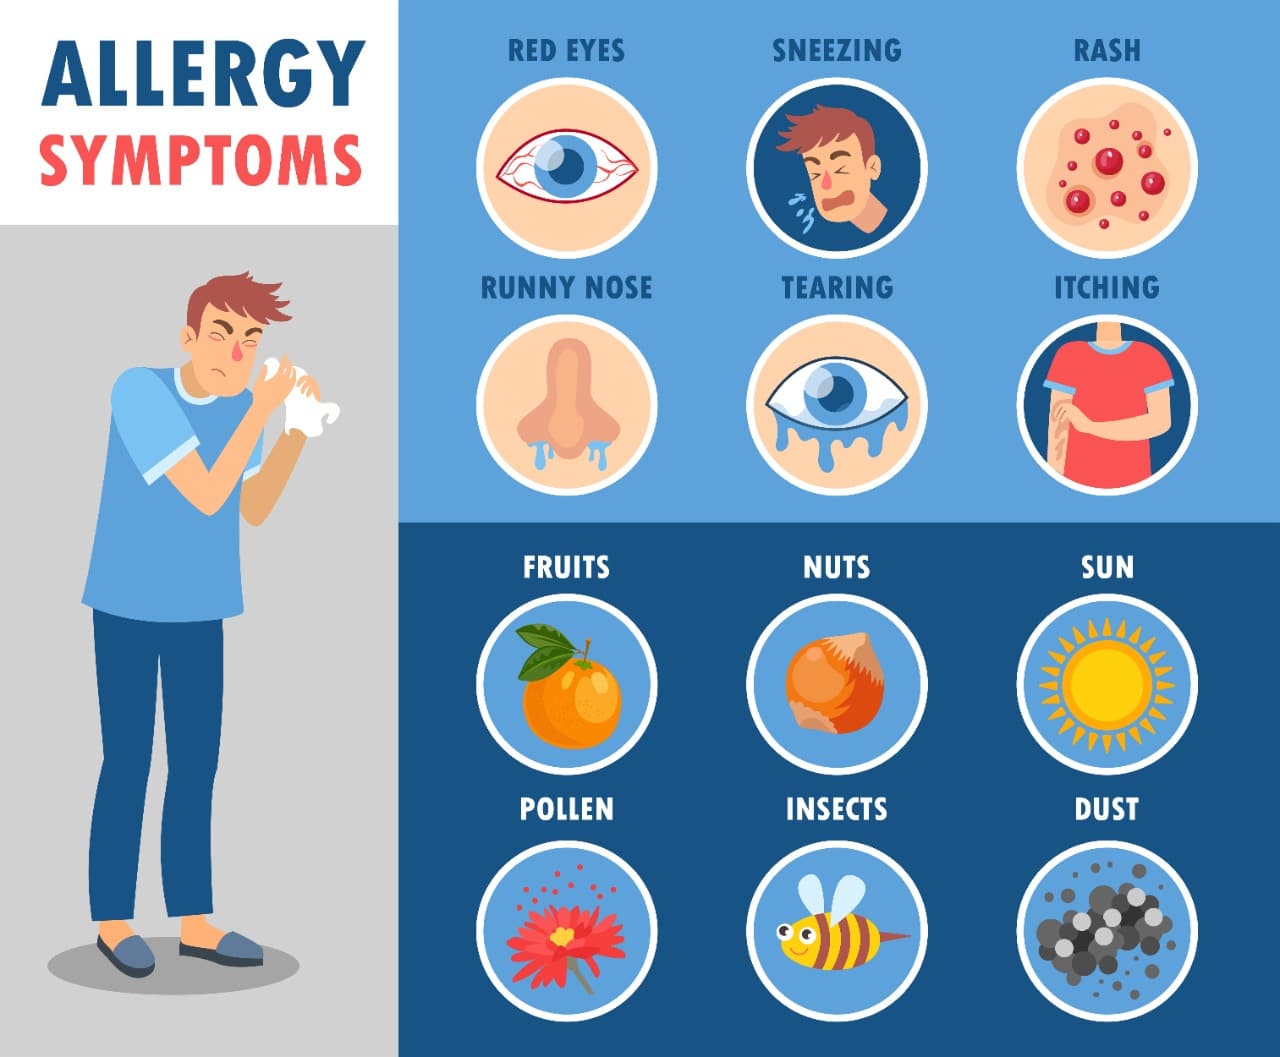 Symptoms of Allergic Rhinitis